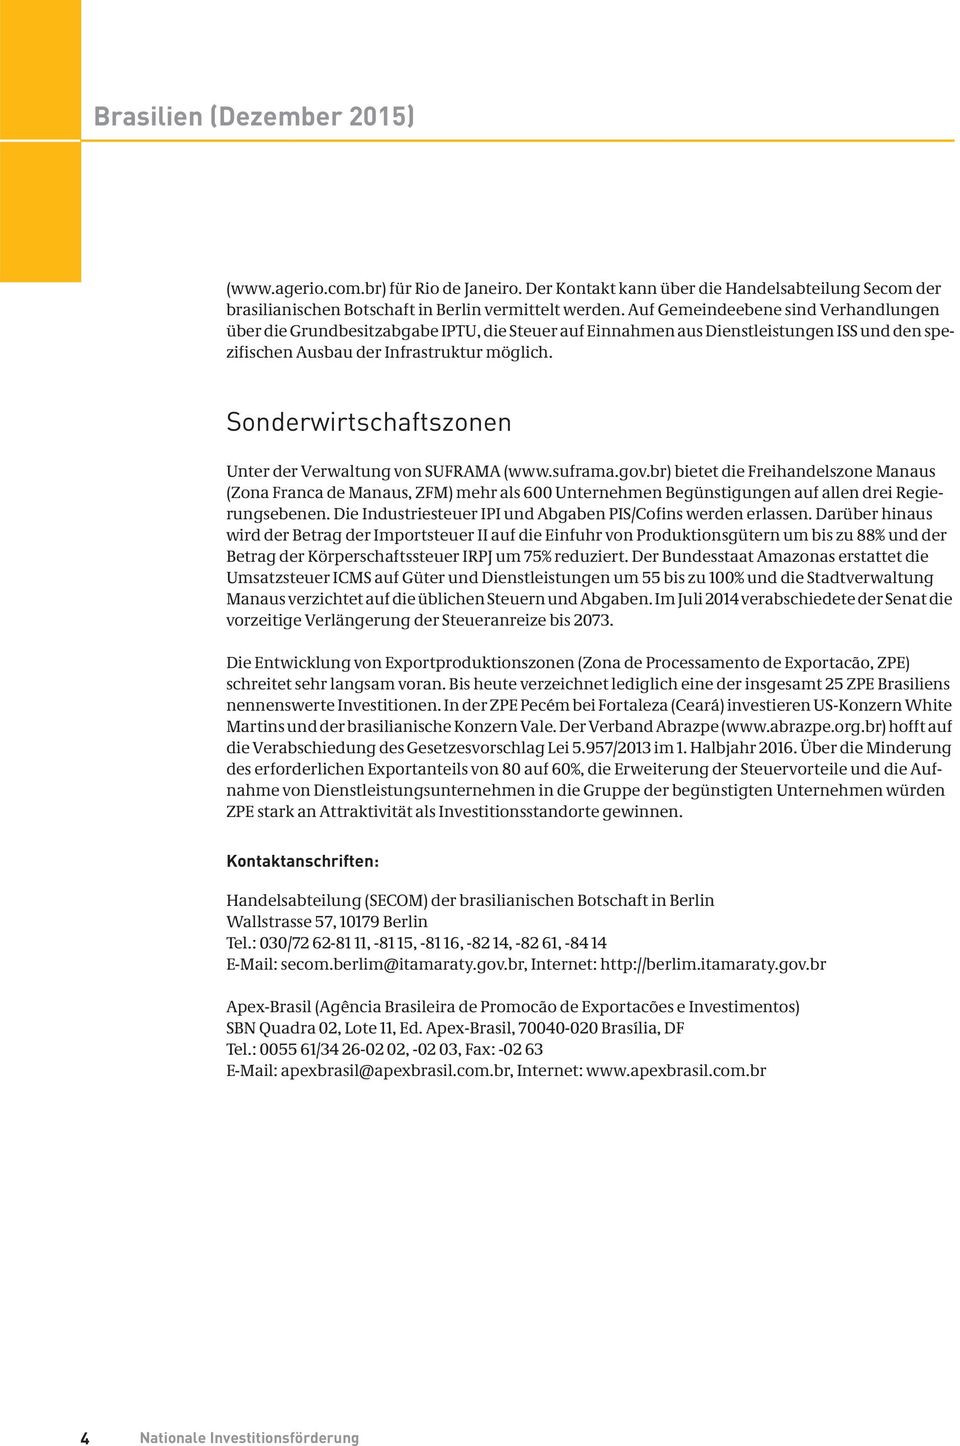 Sonderwirtschaftszonen Unter der Verwaltung von SUFRAMA (www.suframa.gov.